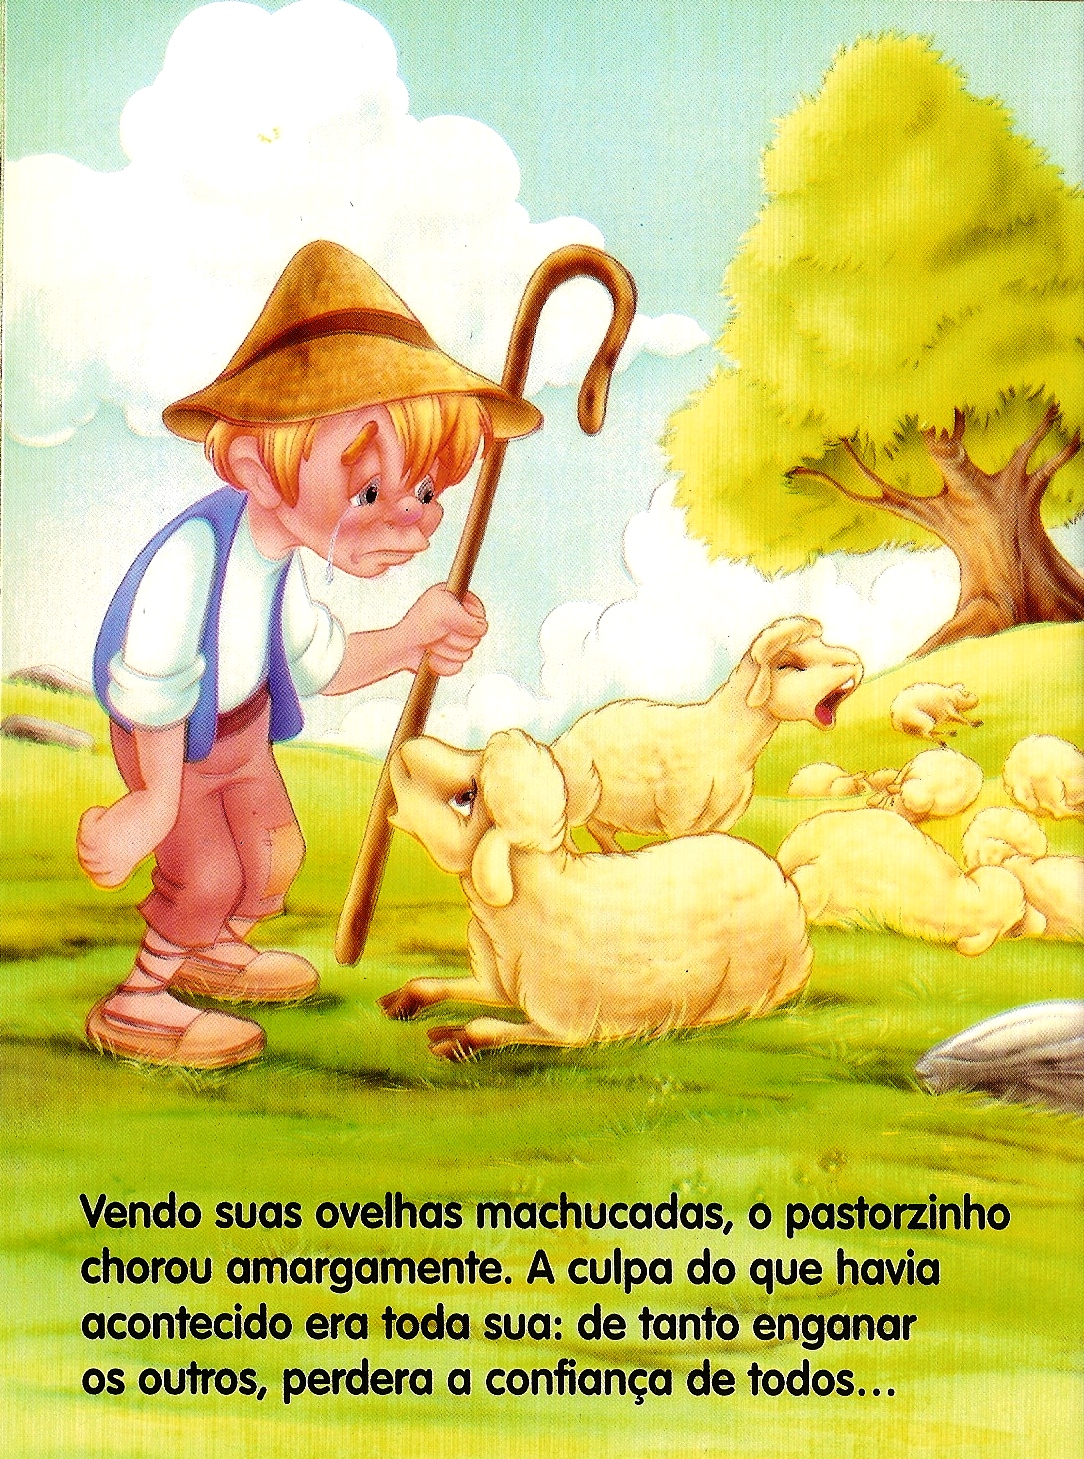 O Pastorzinho e o Lobo Vermelho. Uma nova velha fábula brasileira